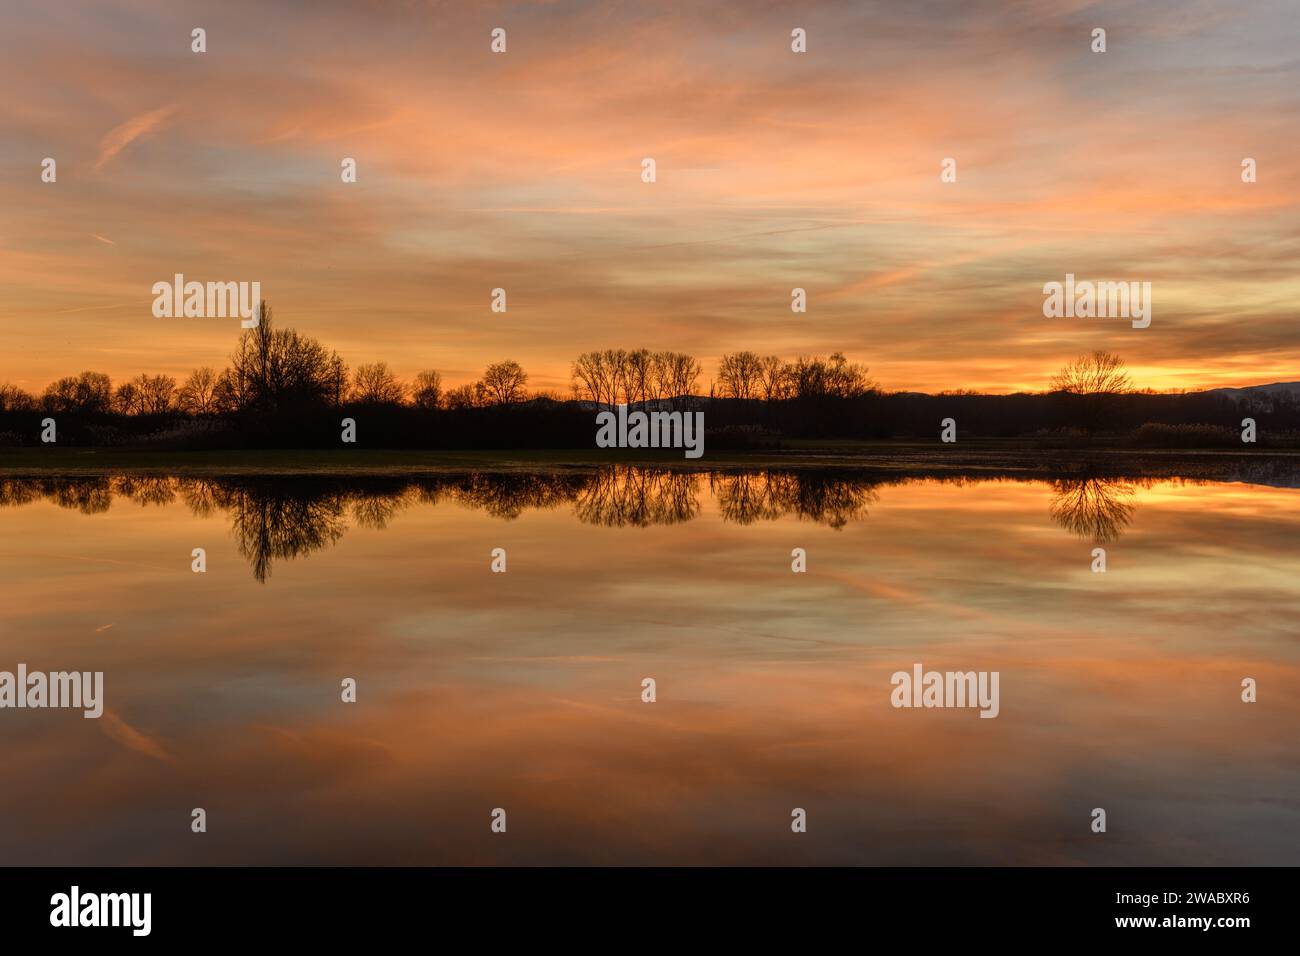 Arbres se reflétant dans l'eau au coucher du soleil. Paysage hivernal ciel rouge et orange. Bas-Rhin, Alsace, Grand est, France, Europe. Banque D'Images